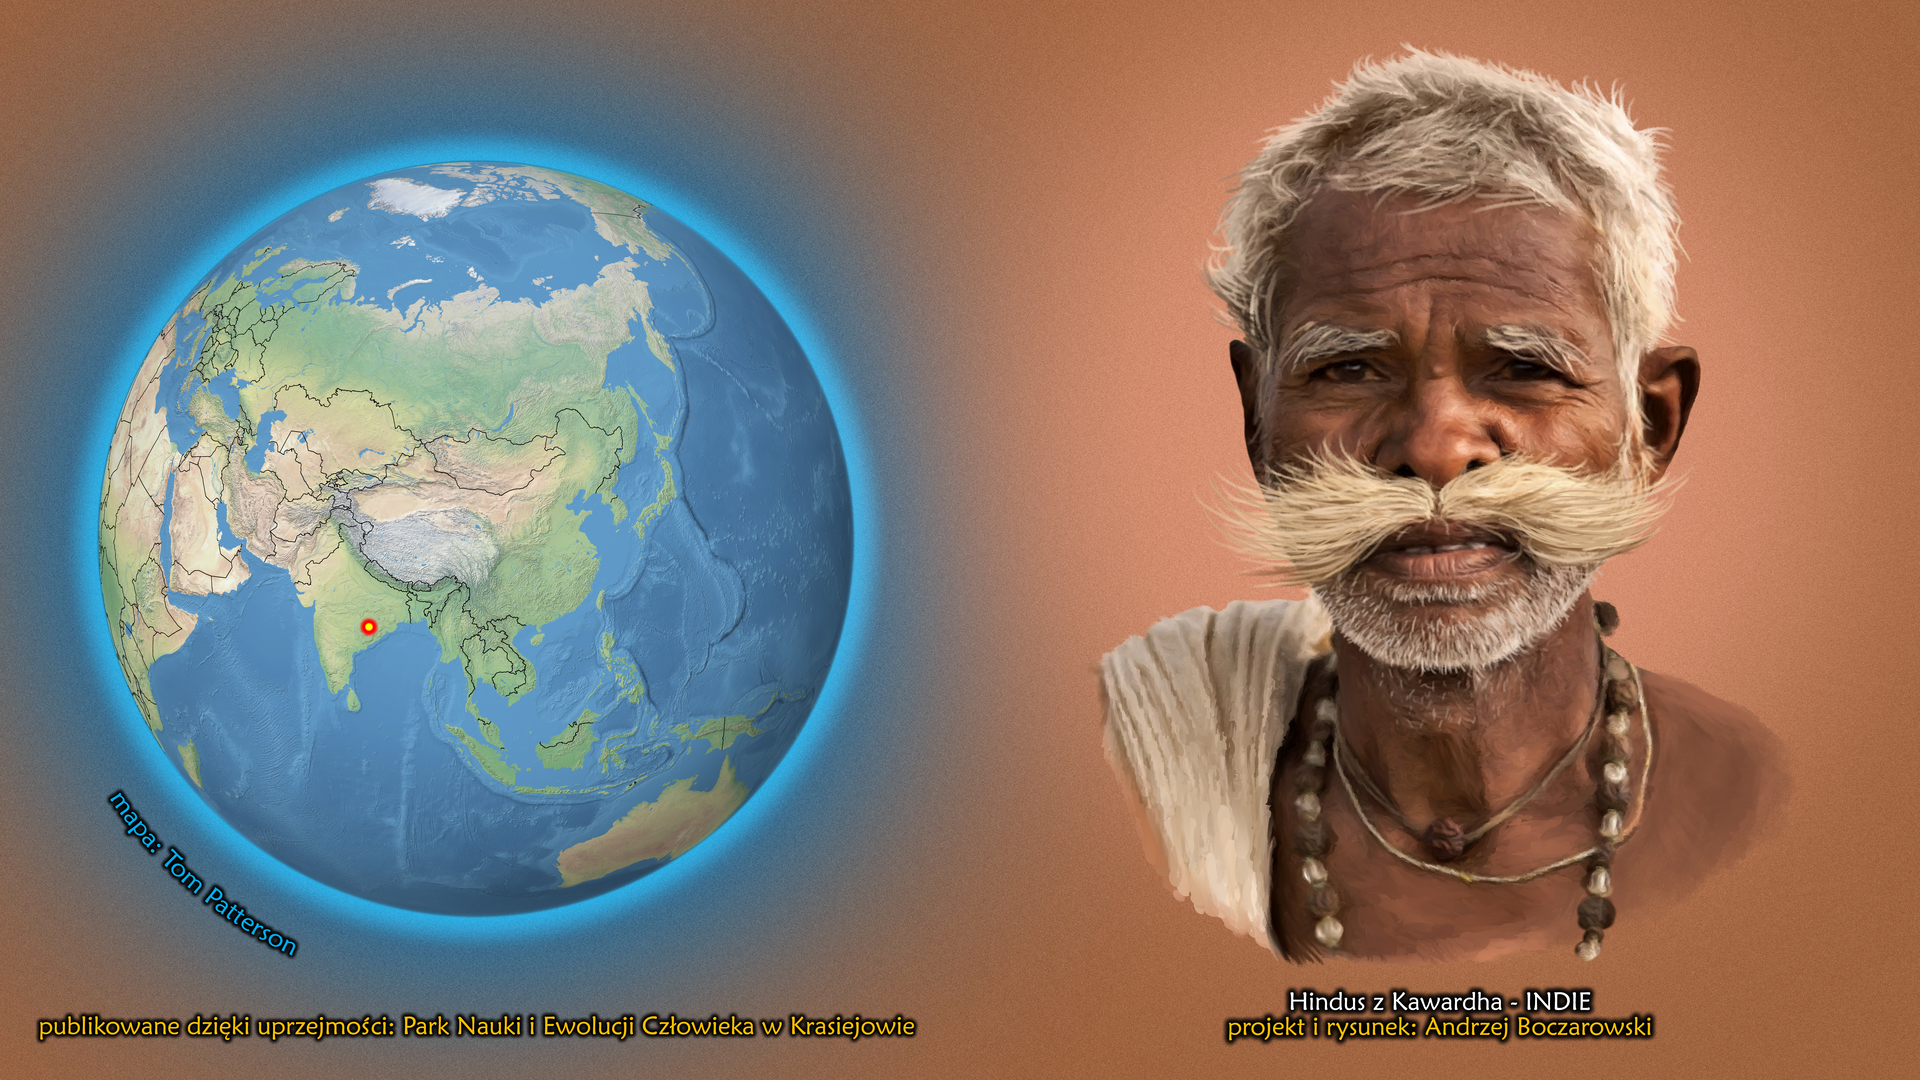 Na ilustracji kula ziemska, zaznaczono punkt w Indiach. Obok twarz mężczyzny z długimi jasnymi wąsami i siwymi krótkimi włosami. Ciemna cera. Podpis – Hindus z Kawardha.